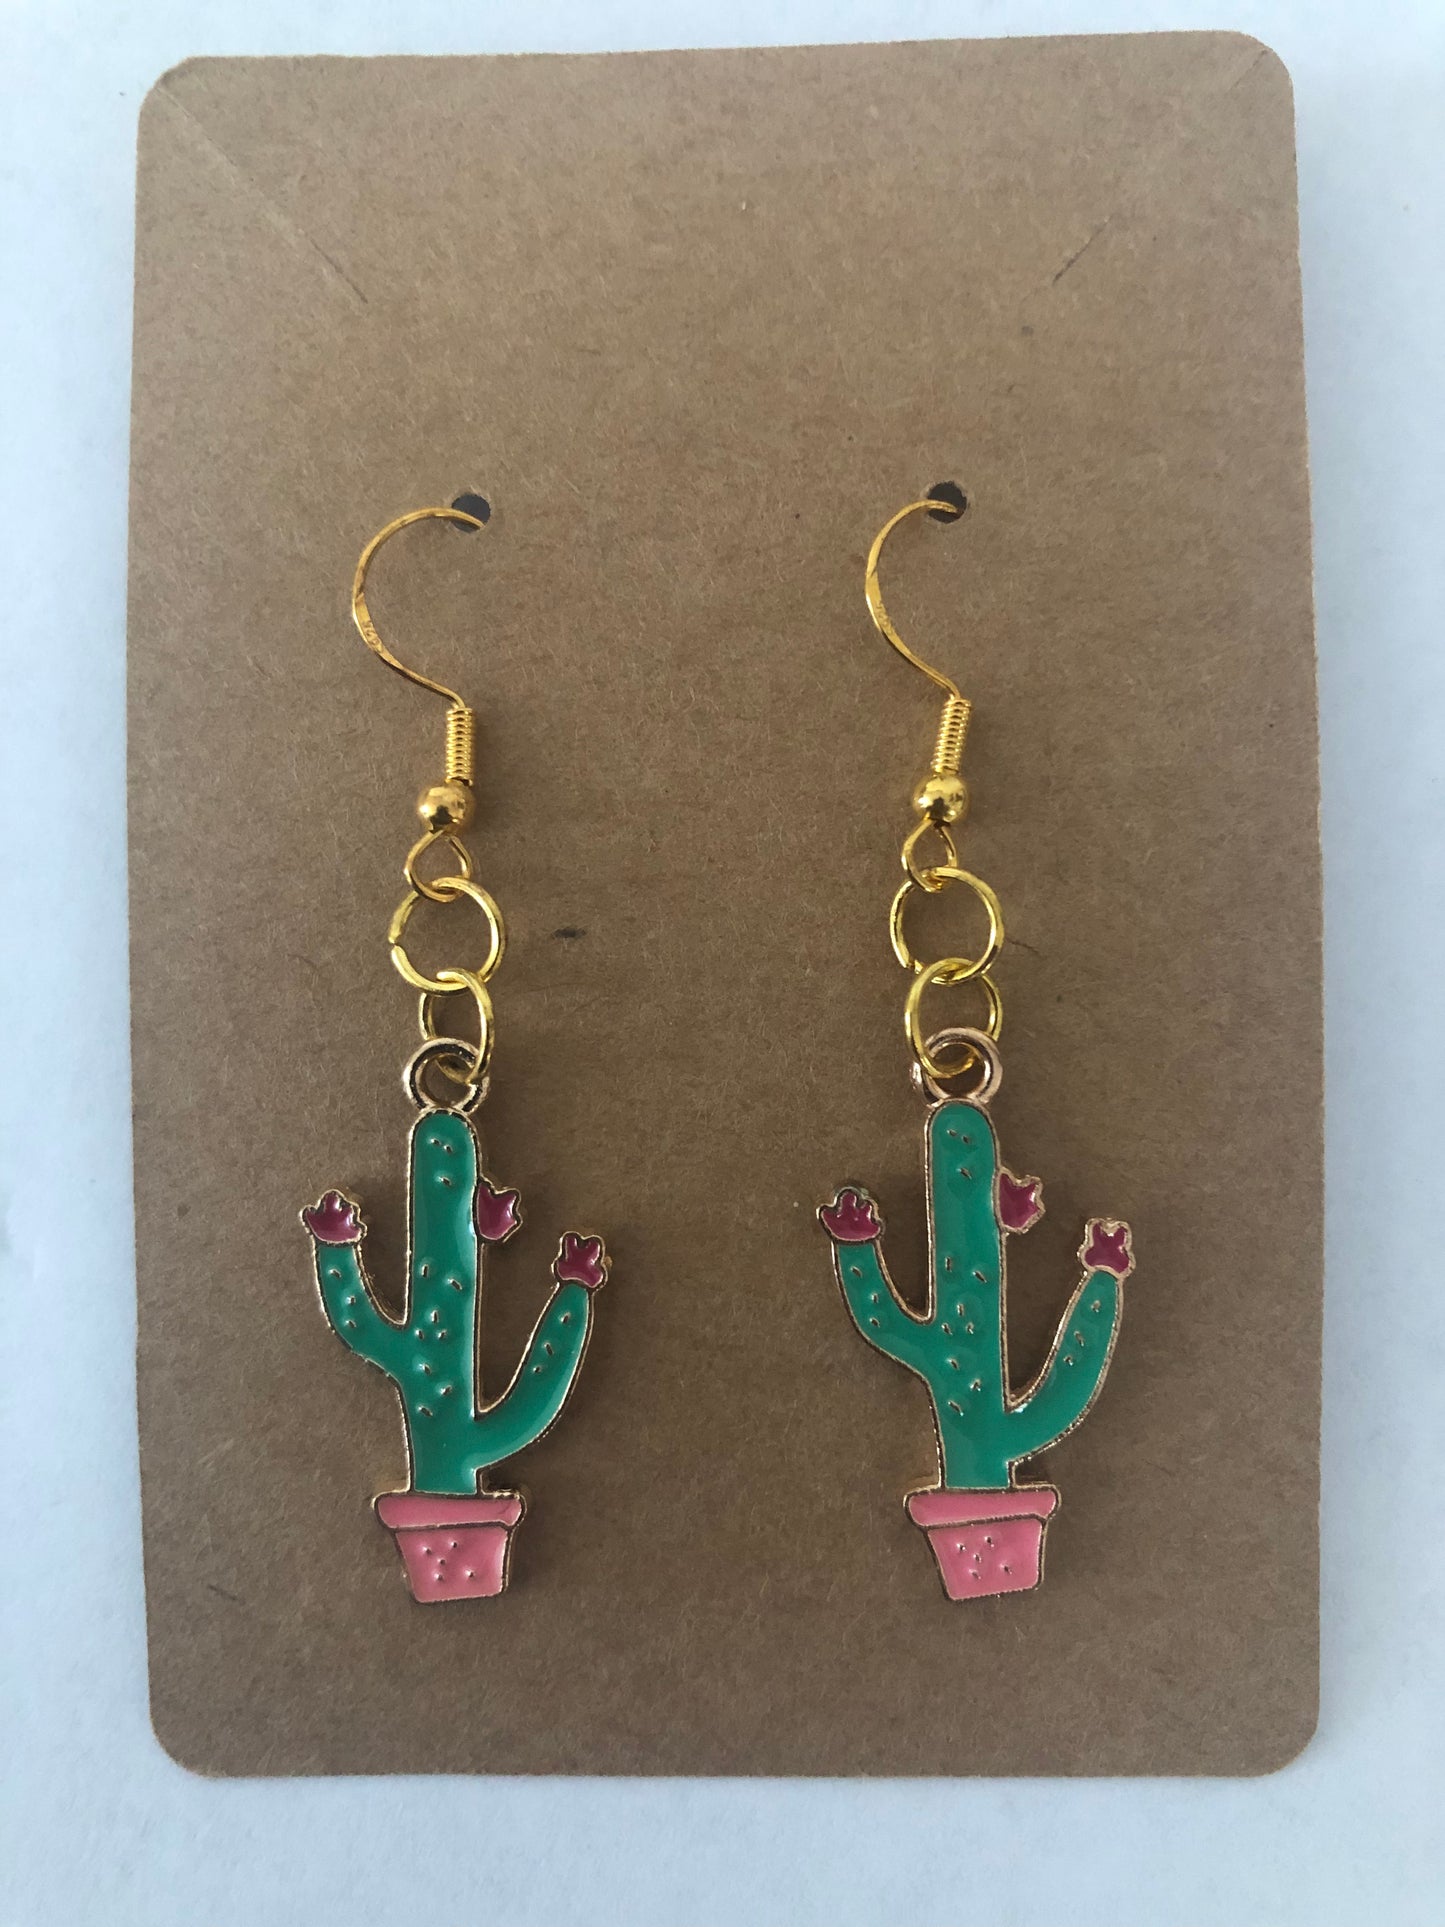 Cactus Jewelry Set